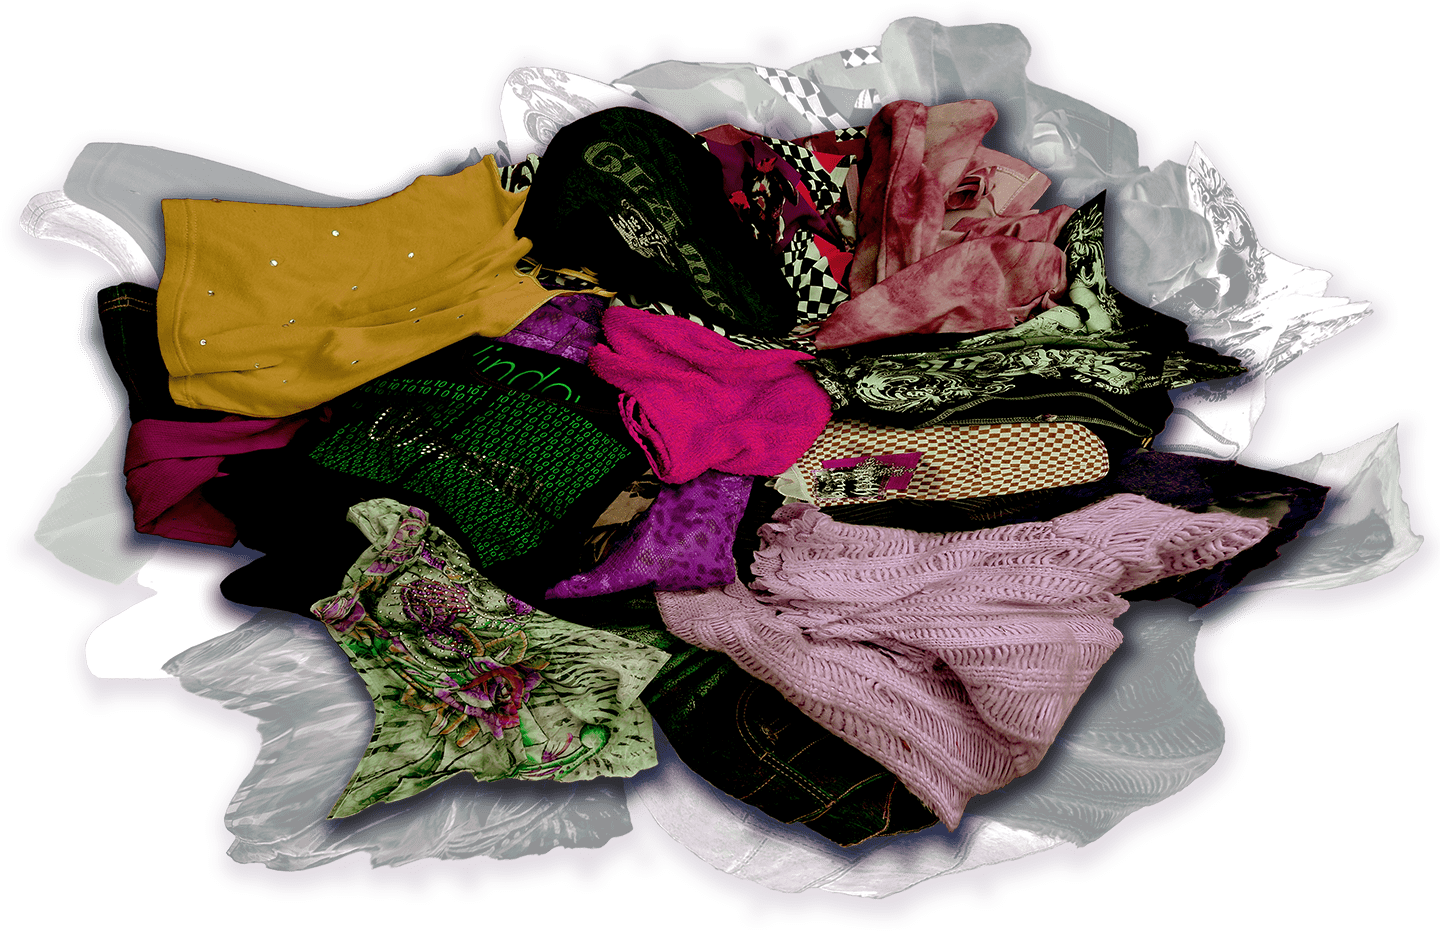 clothing-pile